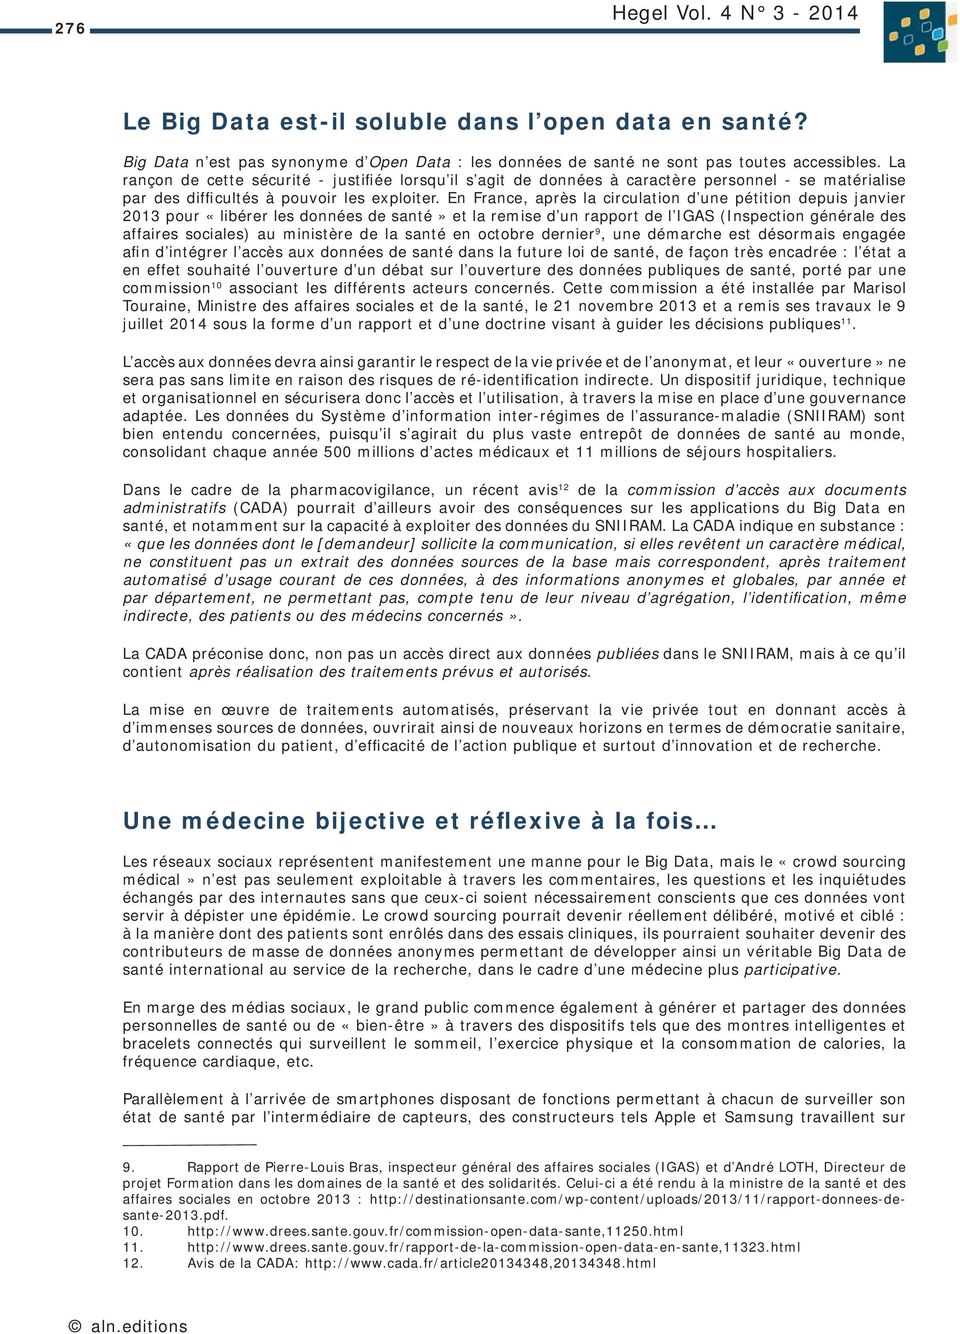 En France, après la circulation d une pétition depuis janvier 2013 pour «libérer les données de santé» et la remise d un rapport de l IGAS (Inspection générale des affaires sociales) au ministère de